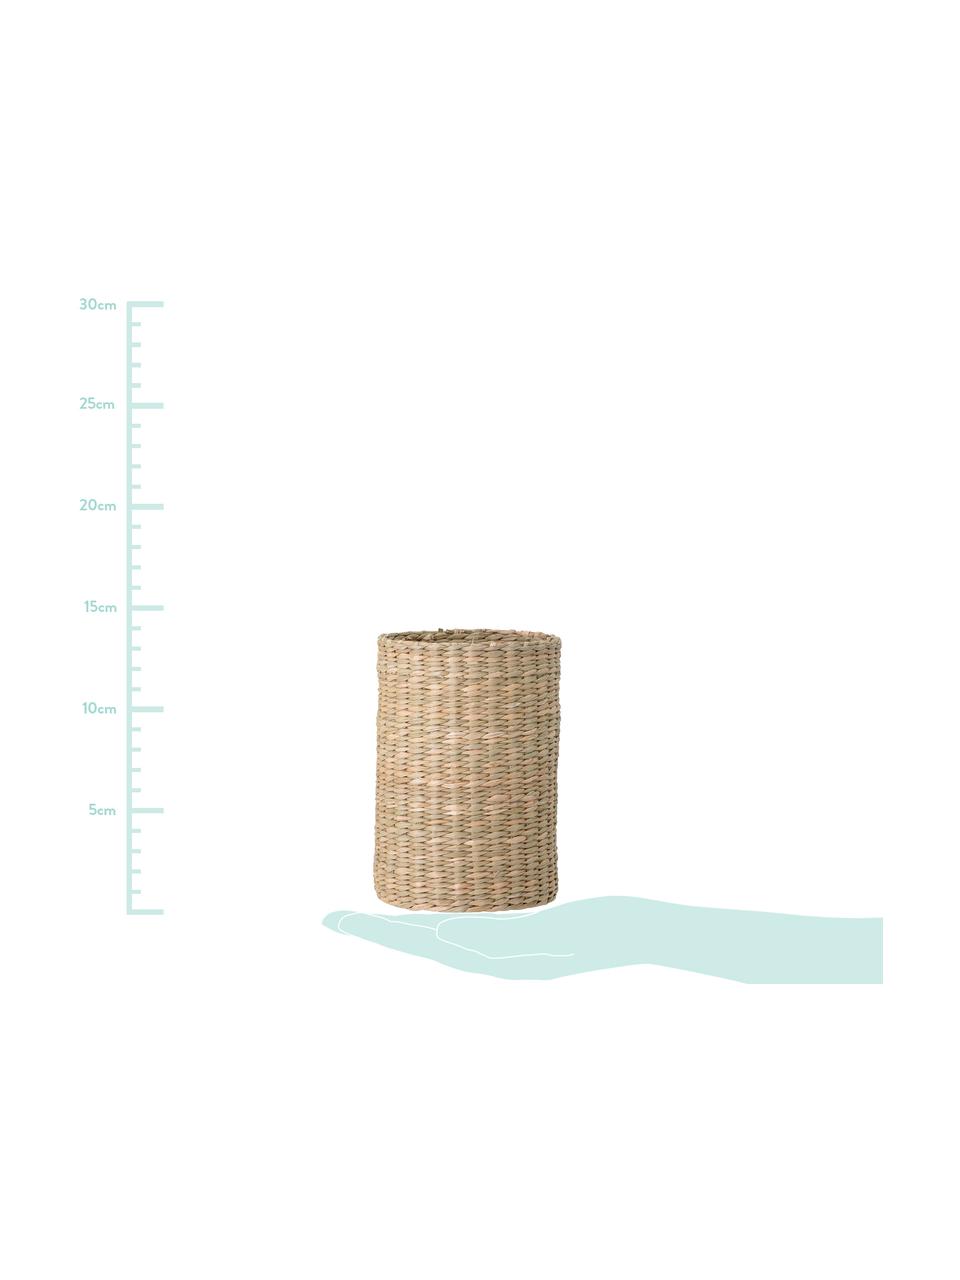 Flessenhouder Basket van zeegras, 2-delig, Zeegraskleurig, Beige, Set met verschillende formaten